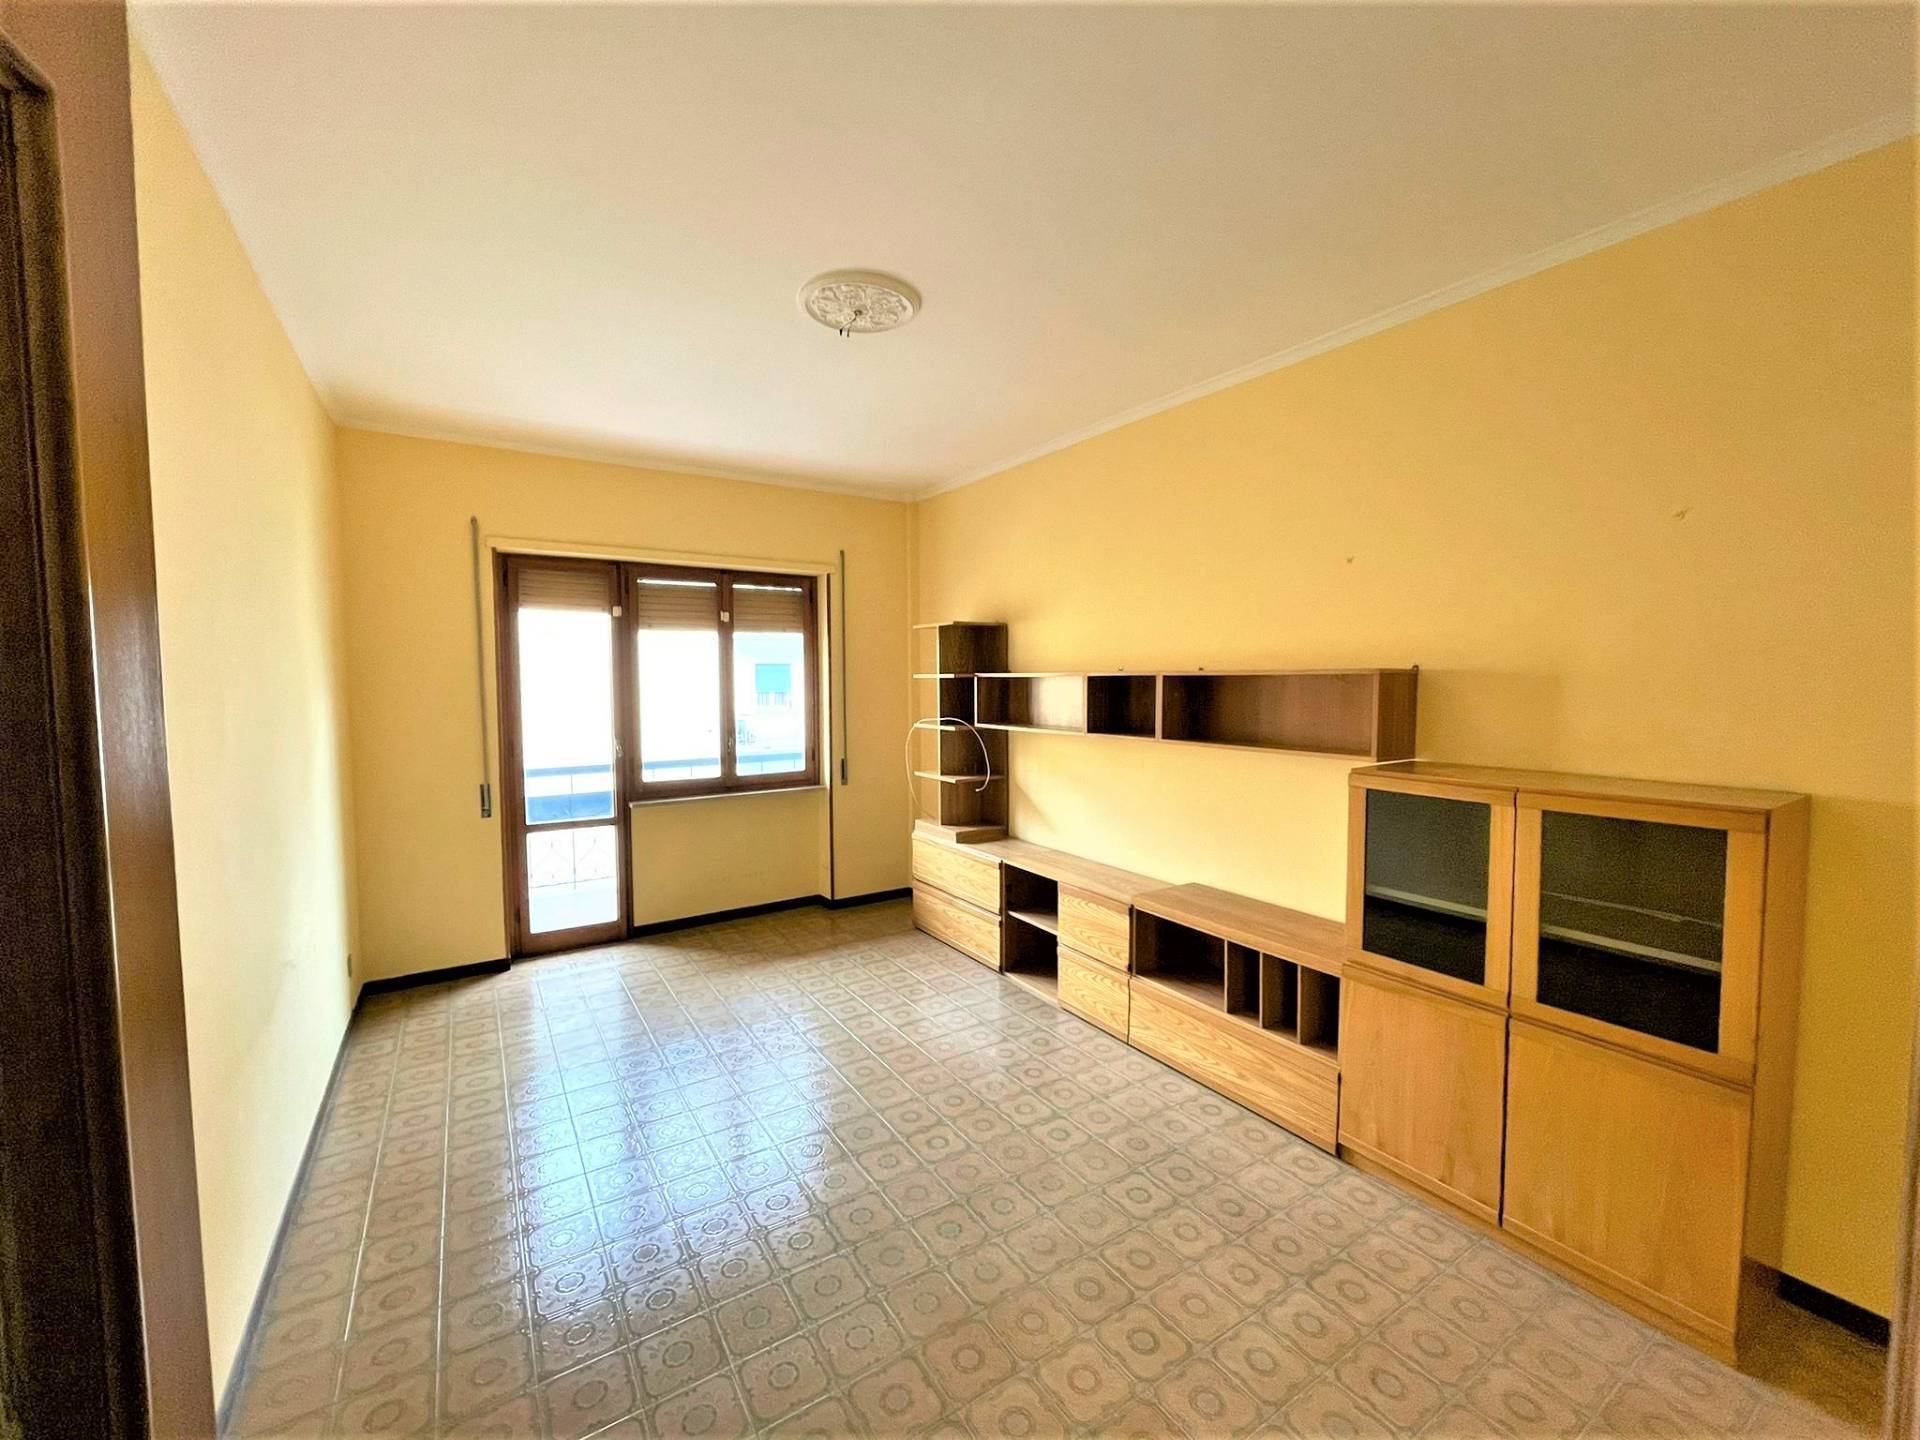 Appartamento in affitto a Viterbo, 5 locali, zona Zona: Bagnaia, prezzo € 500 | CambioCasa.it